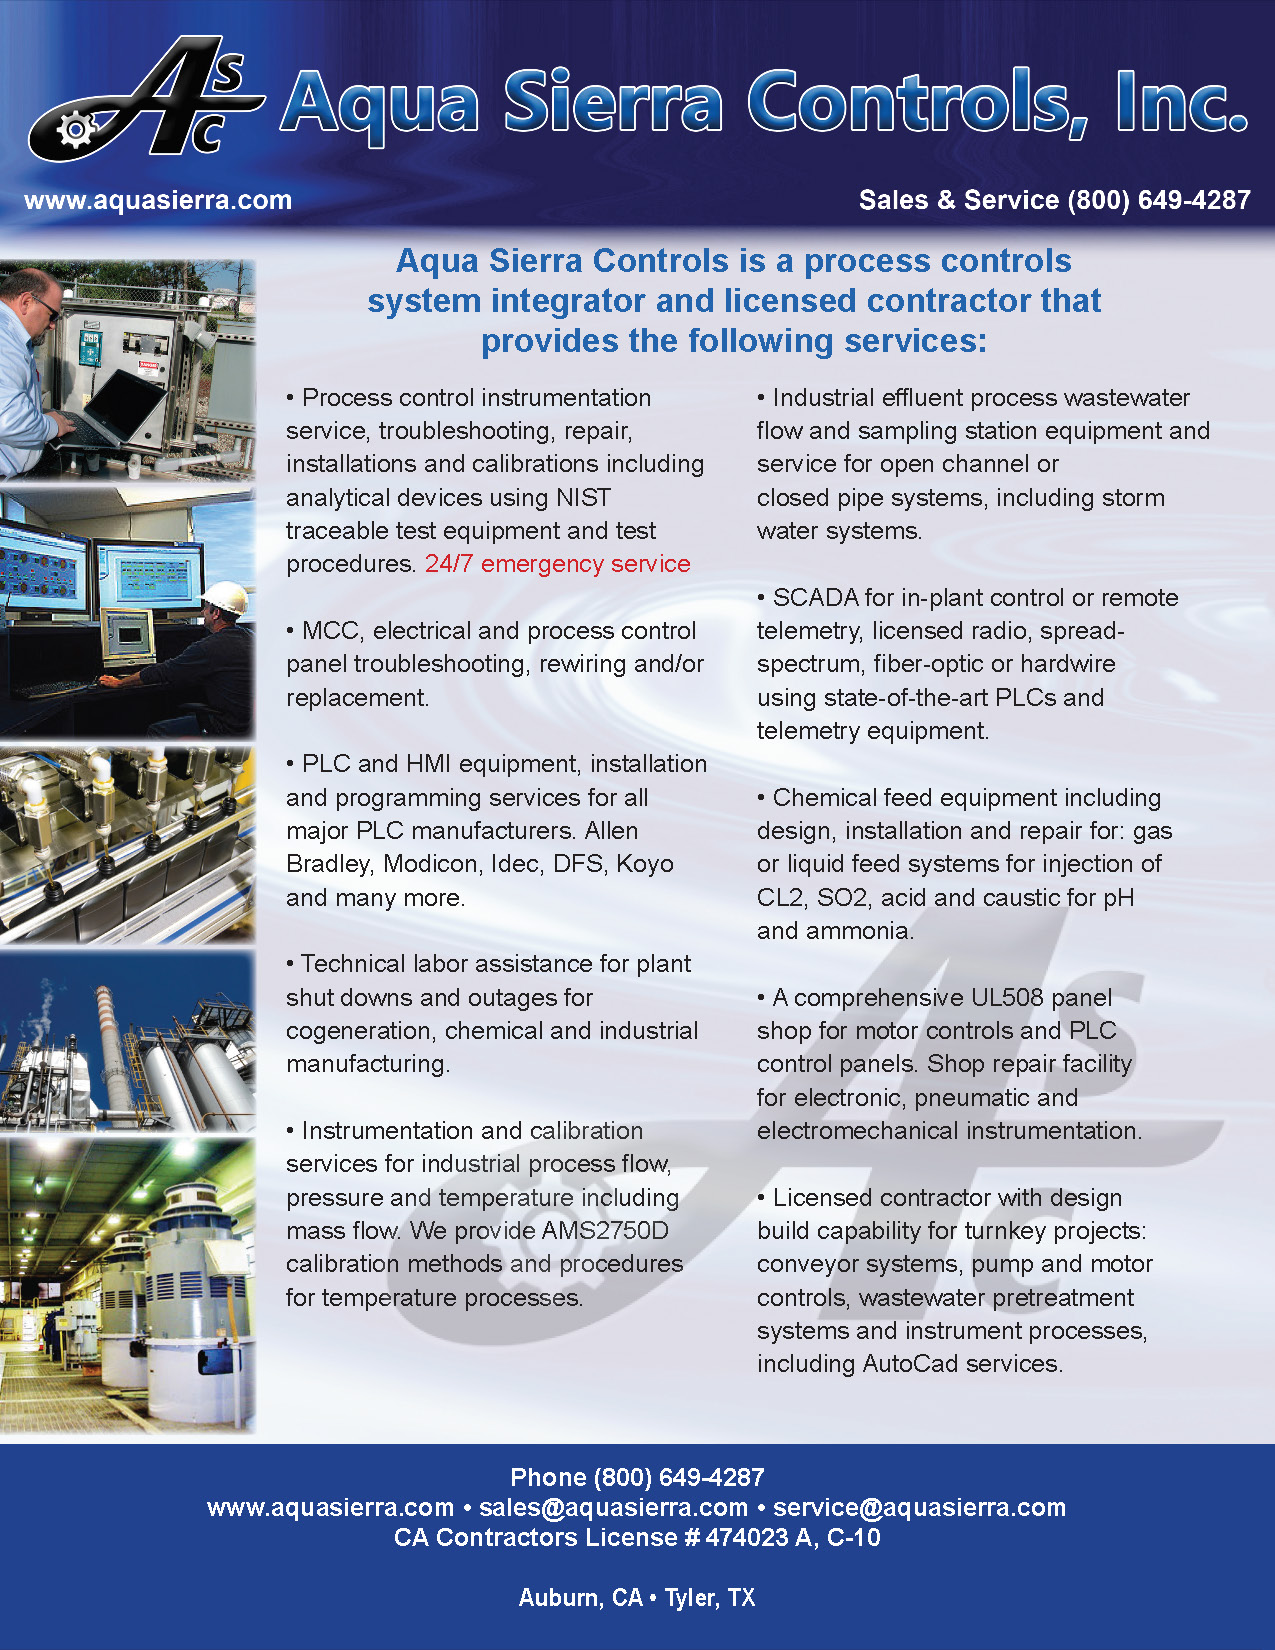 Aqua Sierra Controls, Inc. - Services